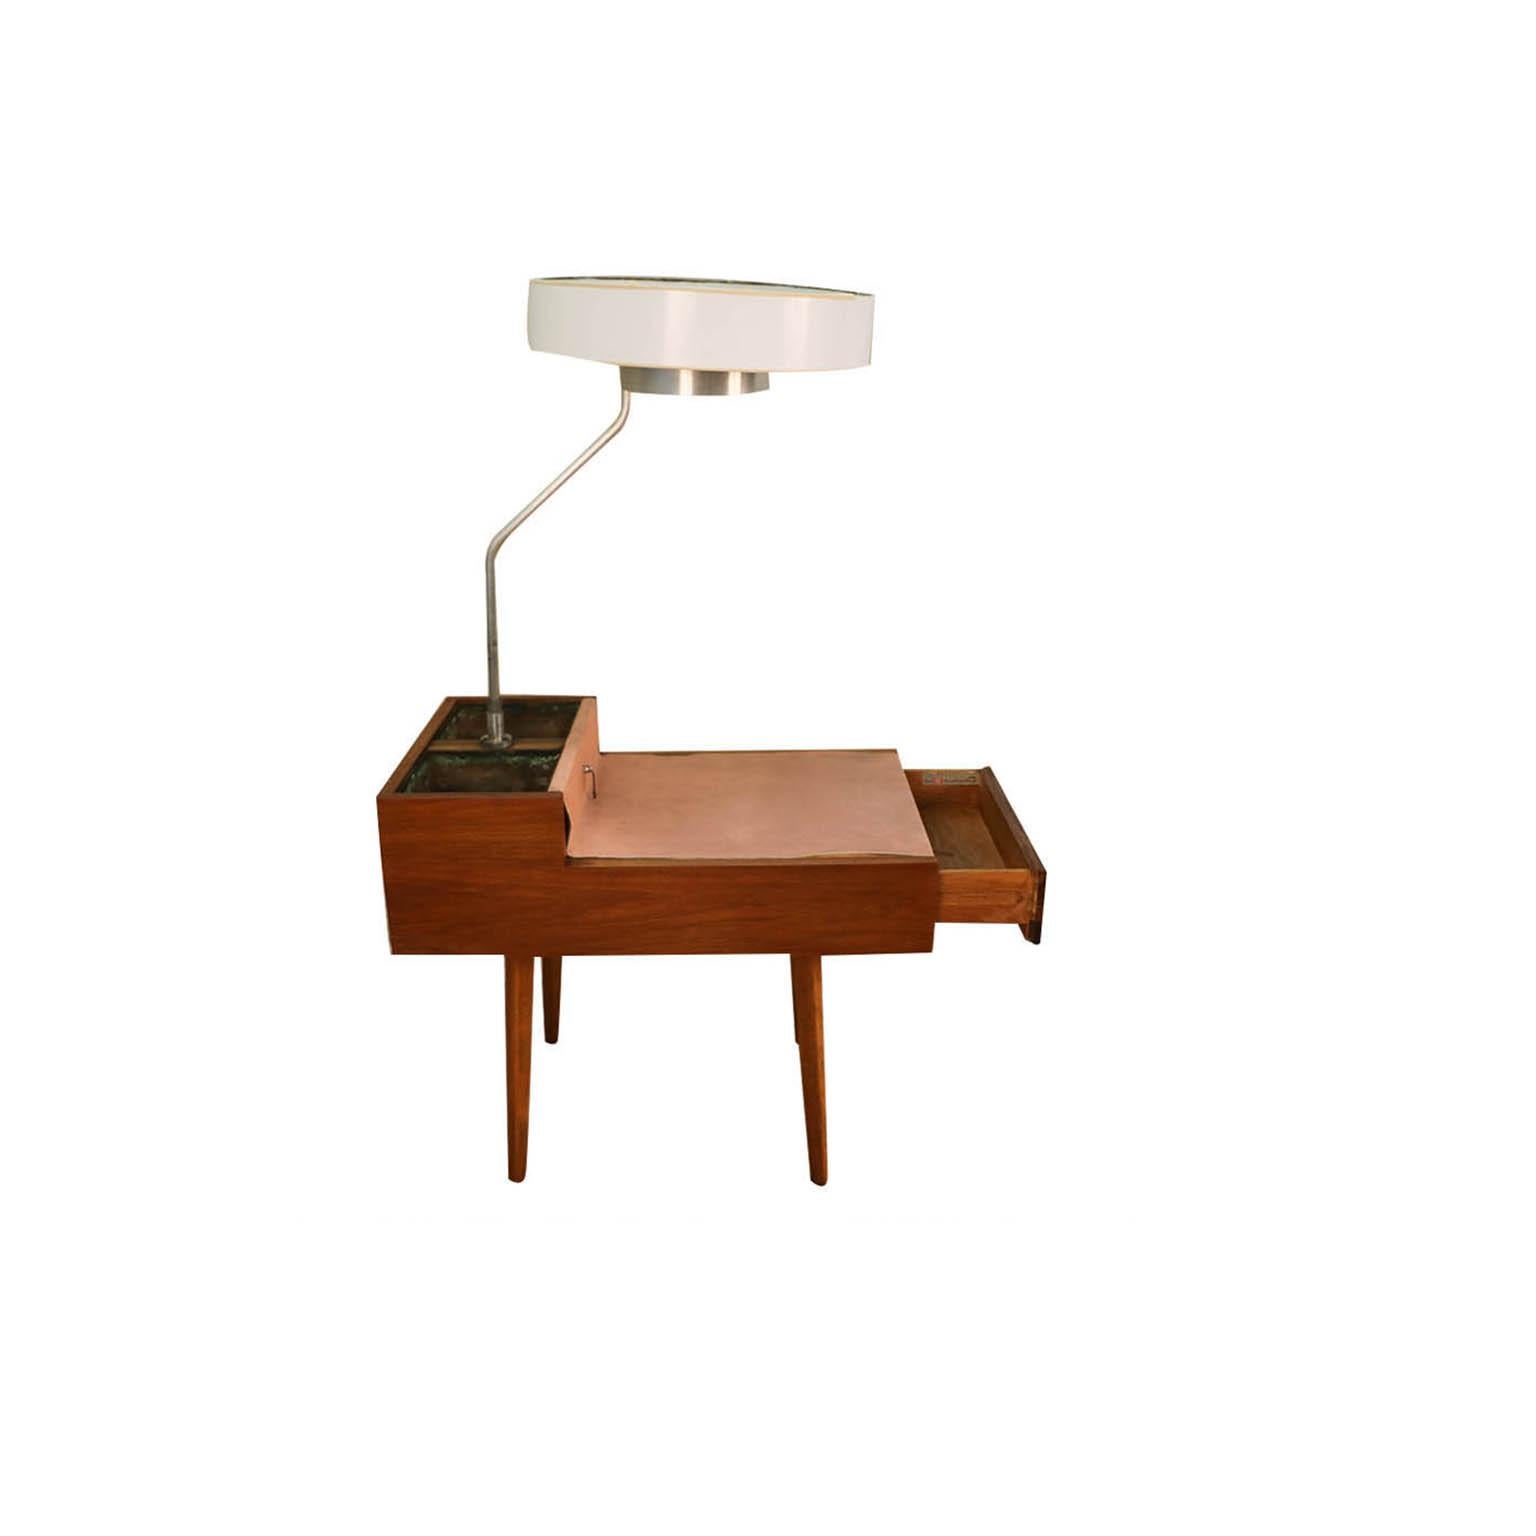 Einzigartiger und seltener Mid-Century Modern Beistelltisch Modell 4634-L mit Lampe und Pflanzgefäßen, entworfen von George Nelson für Herman Miller, ca. 1940er Jahre. Mit einem hübschen Gehäuse aus Nussbaumholz und einer dazu passenden Tischplatte